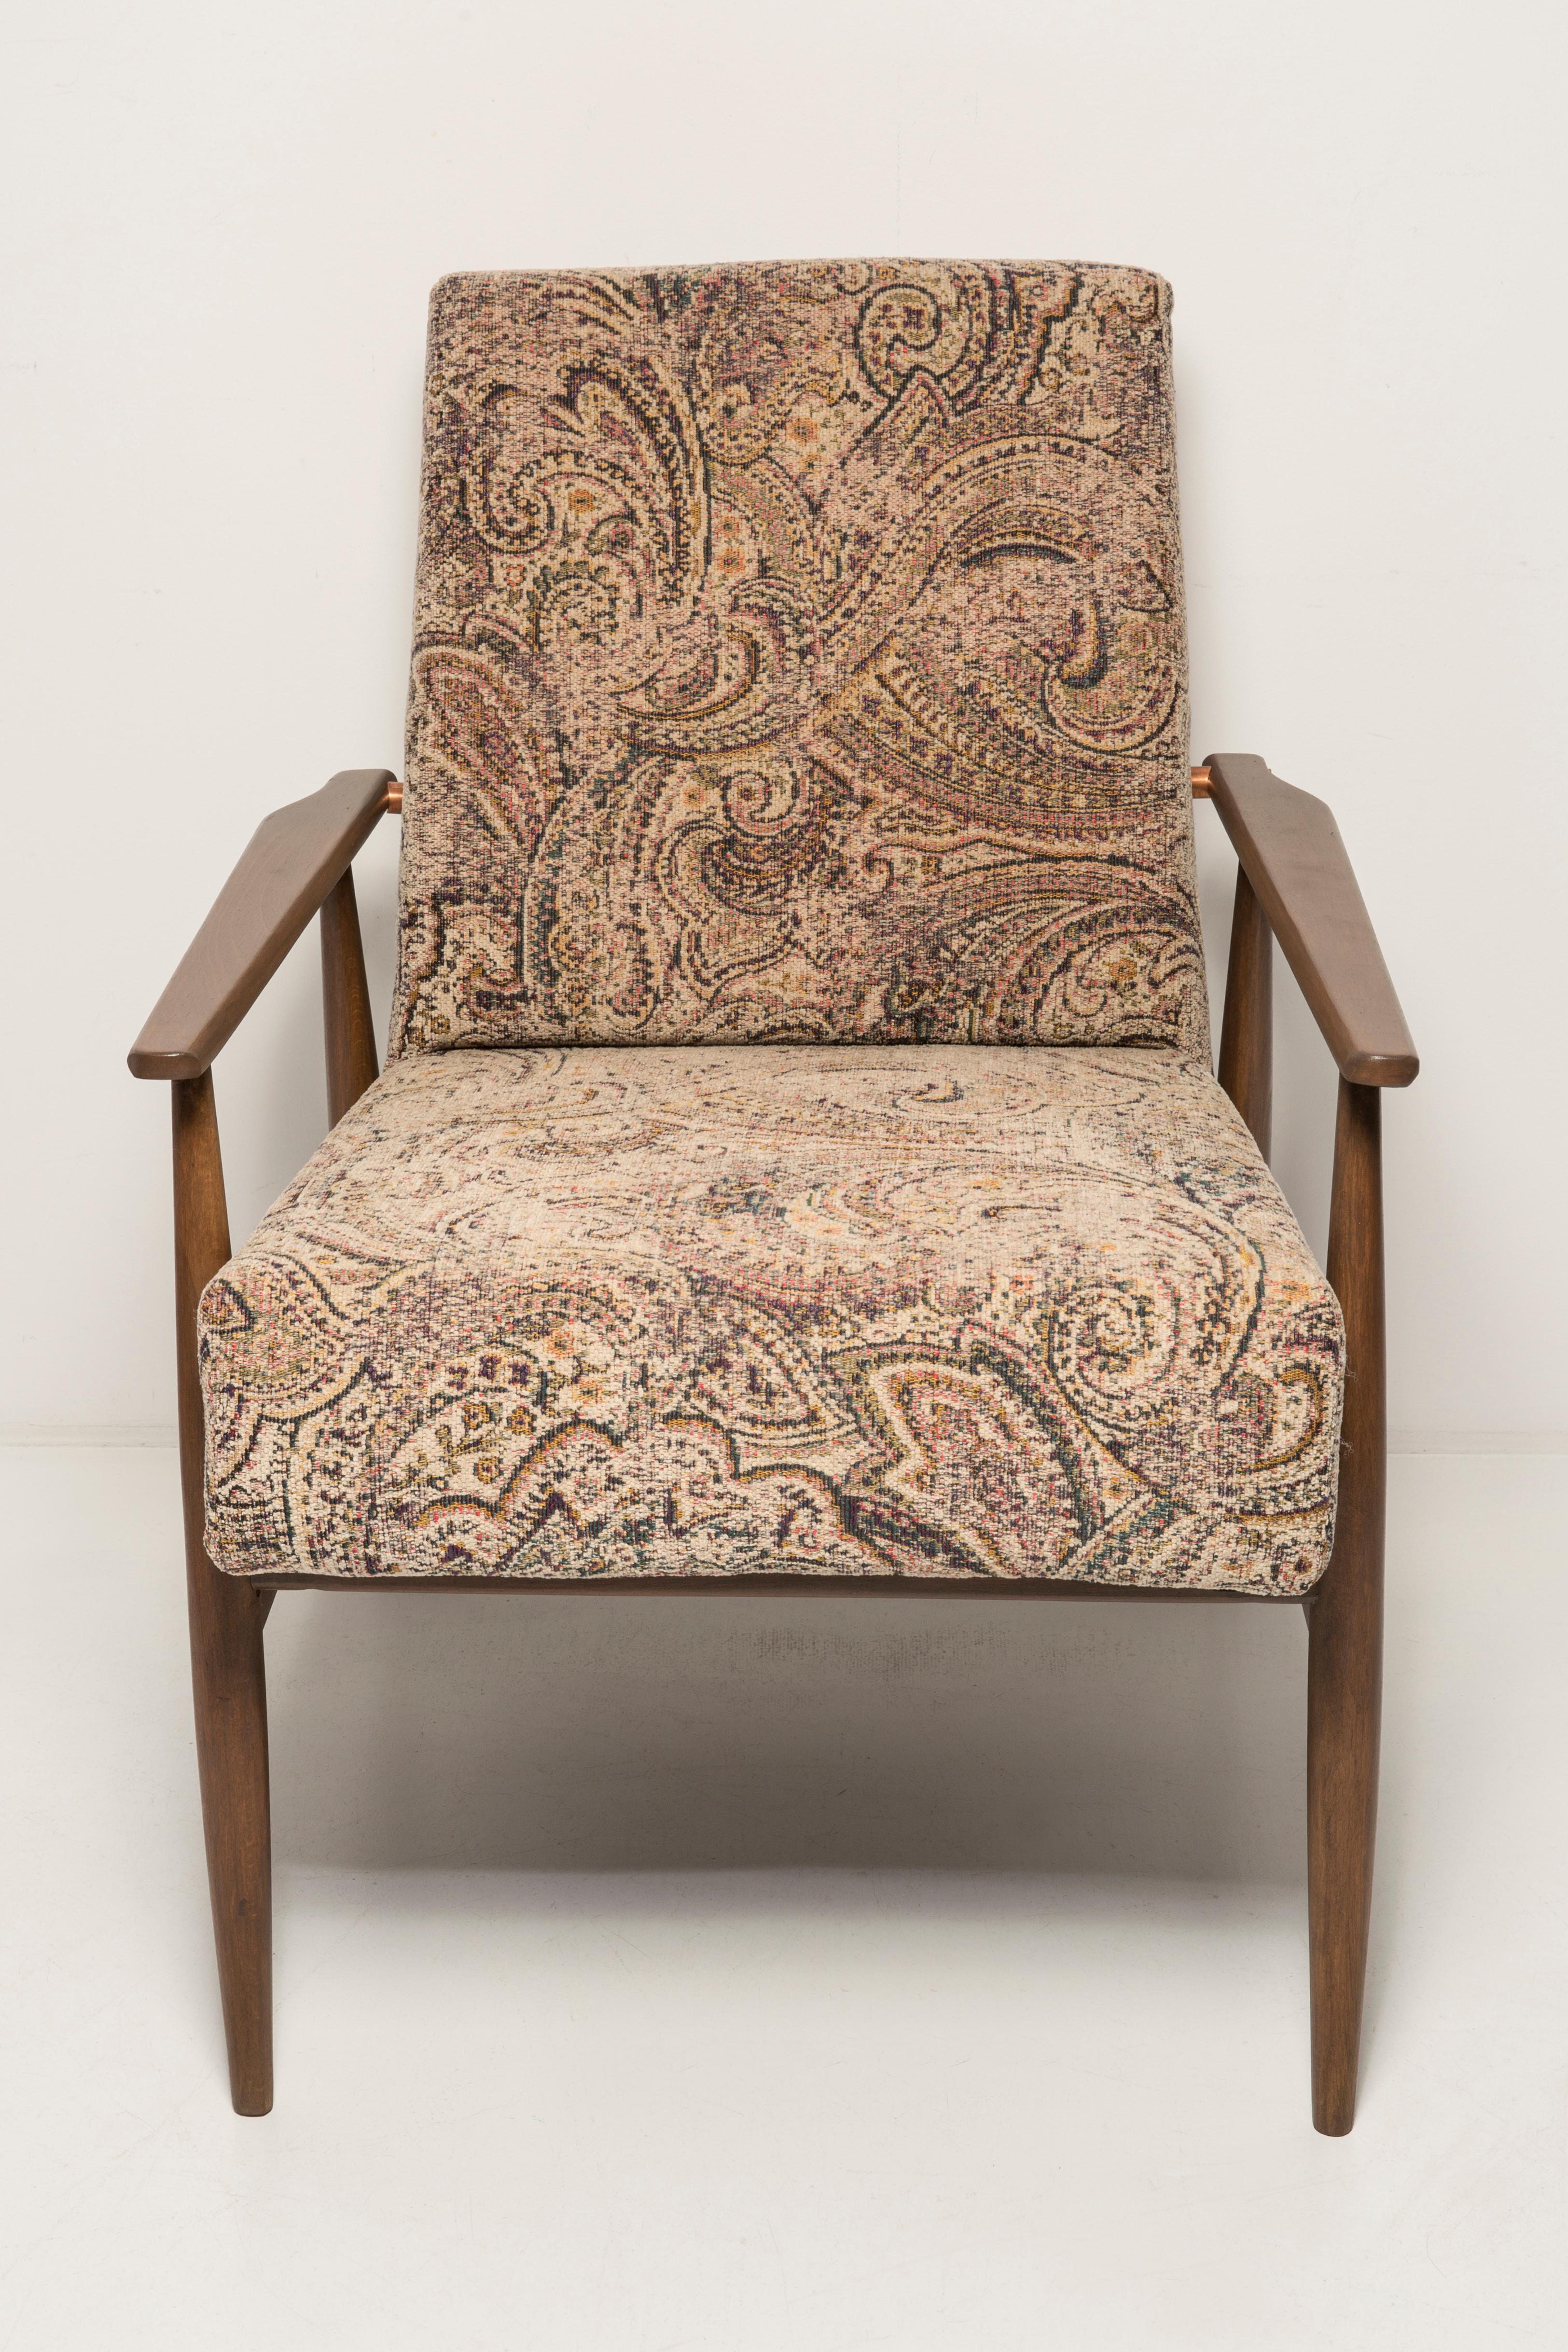 Ein schöner, restaurierter Sessel von Henryk Lis. Möbel nach kompletter Renovierung durch Schreiner und Polsterei. Der Stoff, der mit einer Rückenlehne und einer Sitzfläche bezogen ist, ist ein hochwertiger italienischer Samt. Der Sessel passt